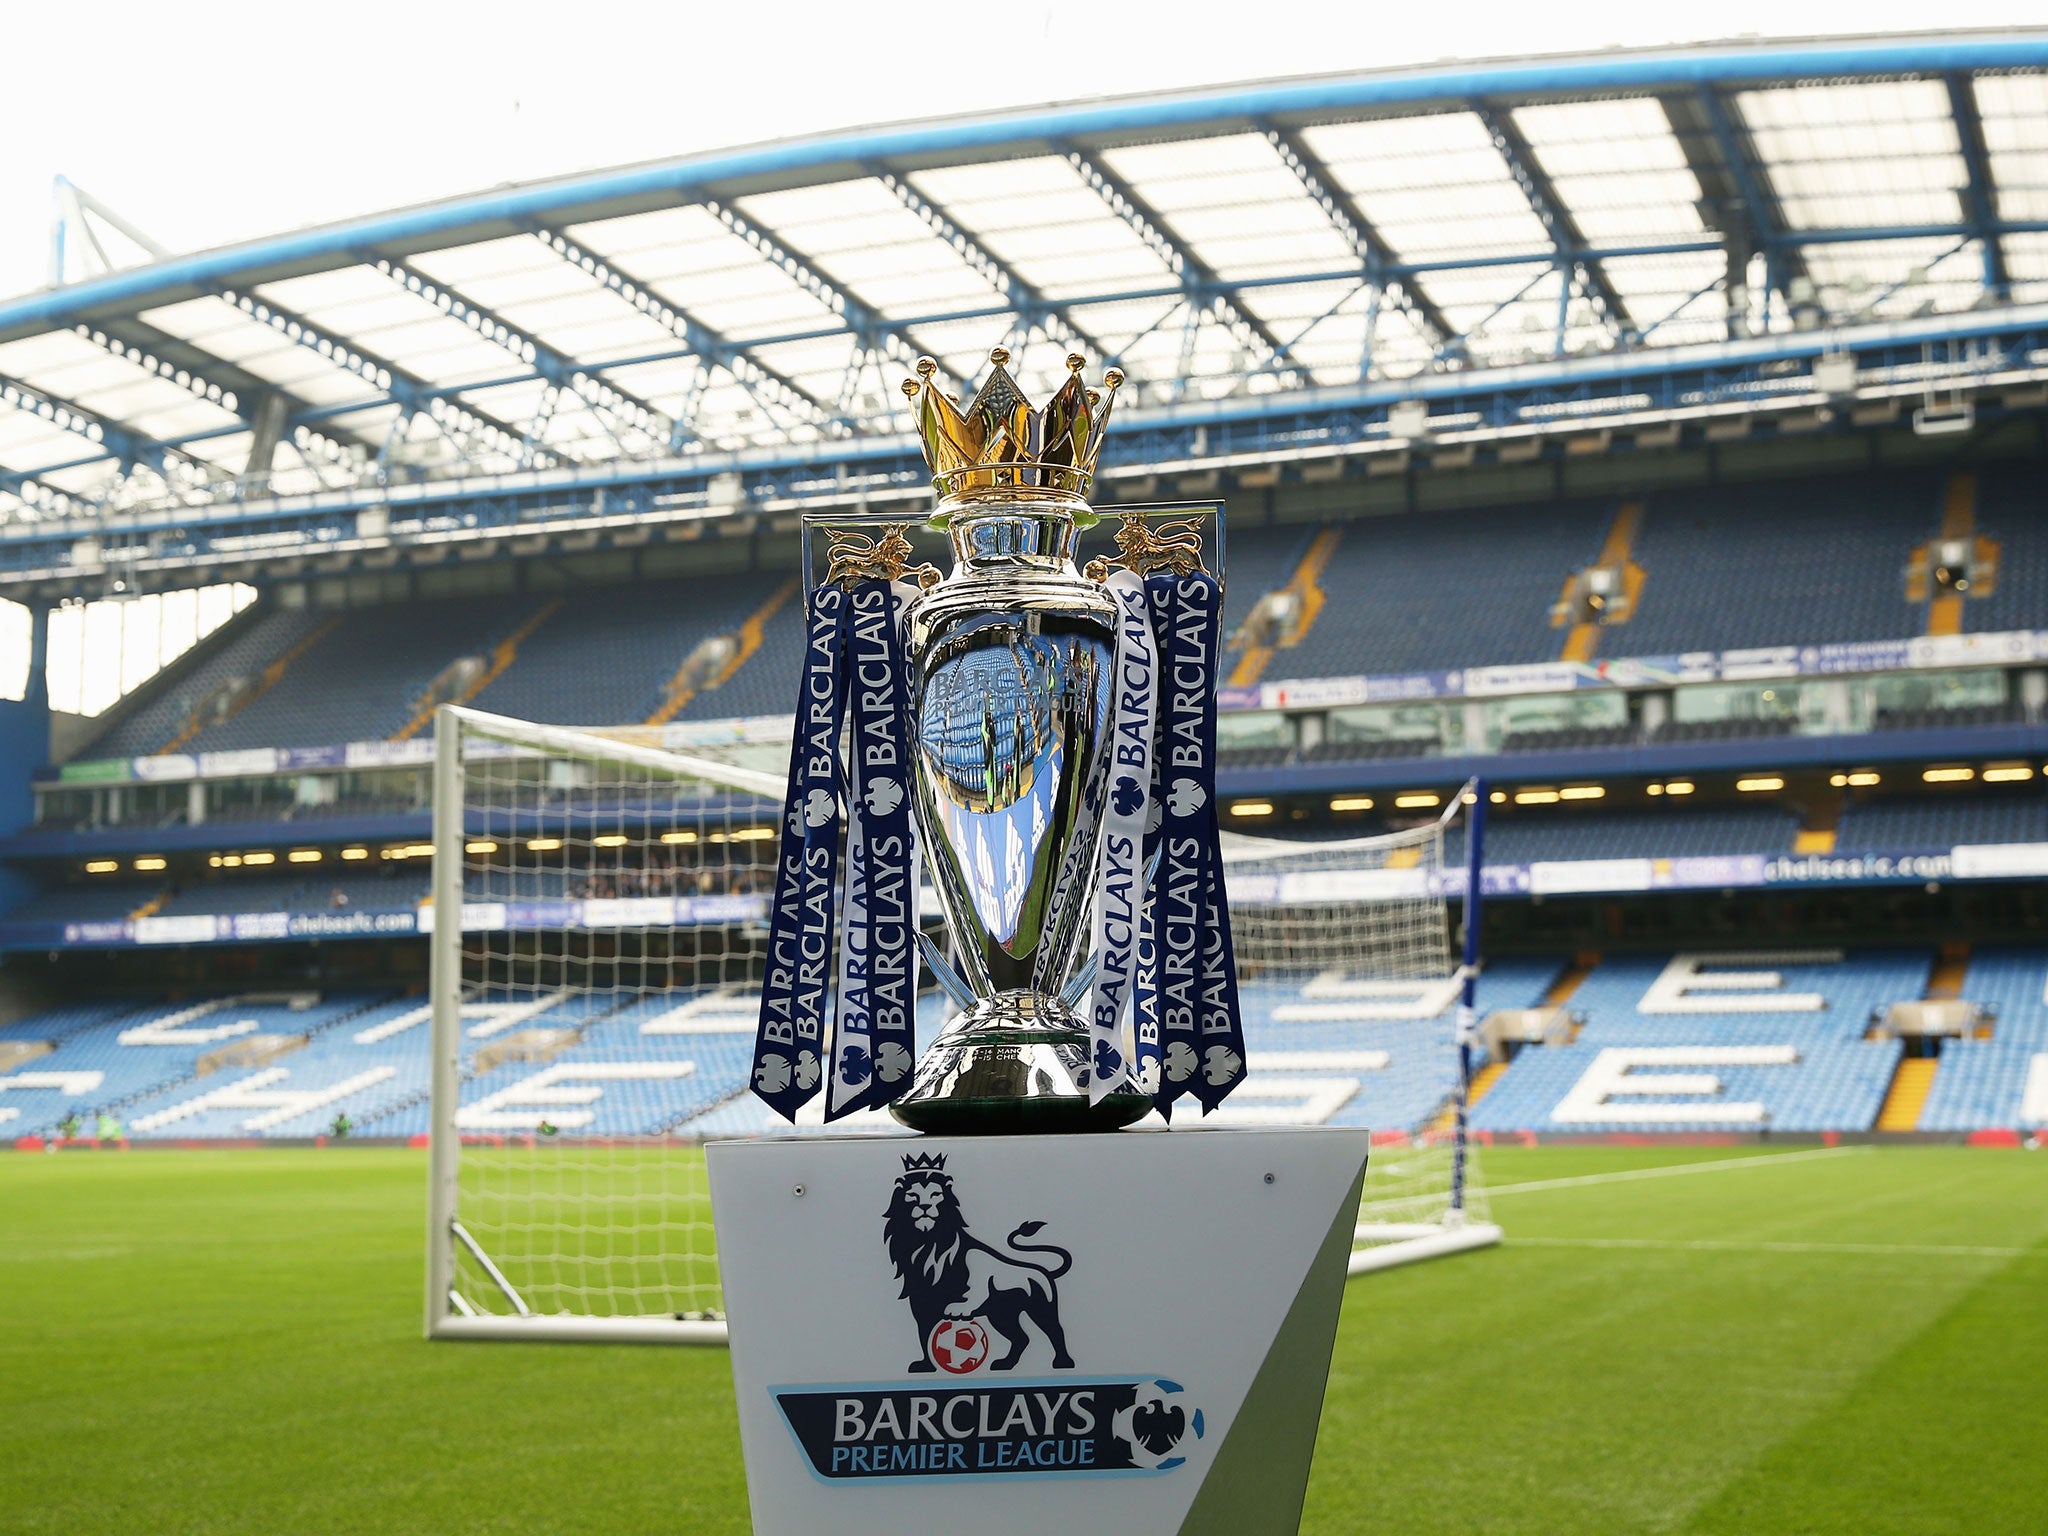 A view of the Premier League trophy